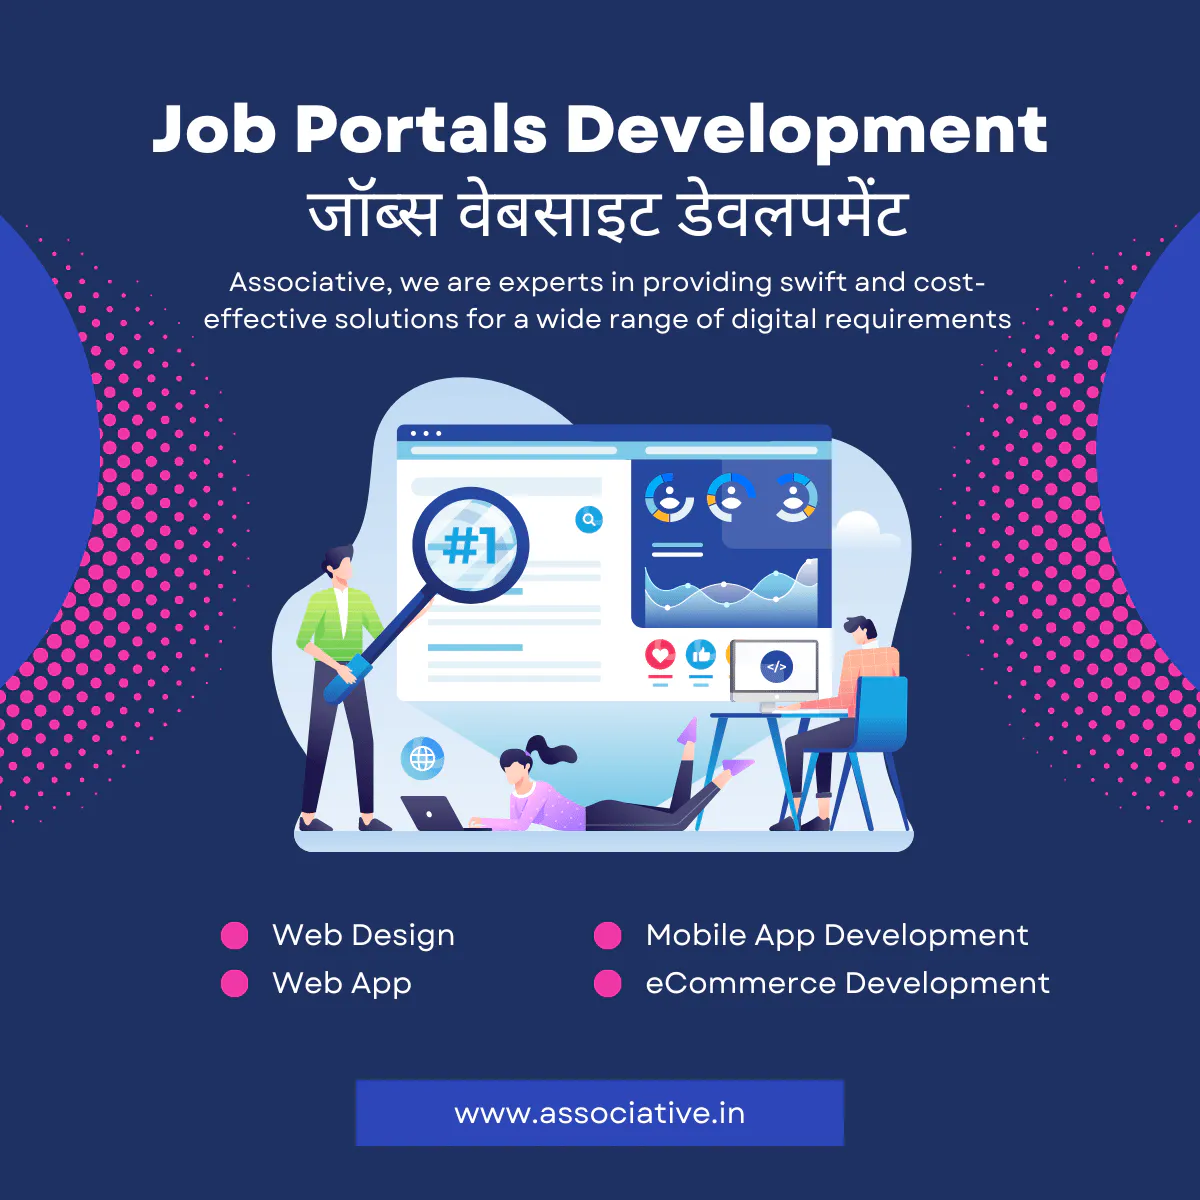 Job Portals Development